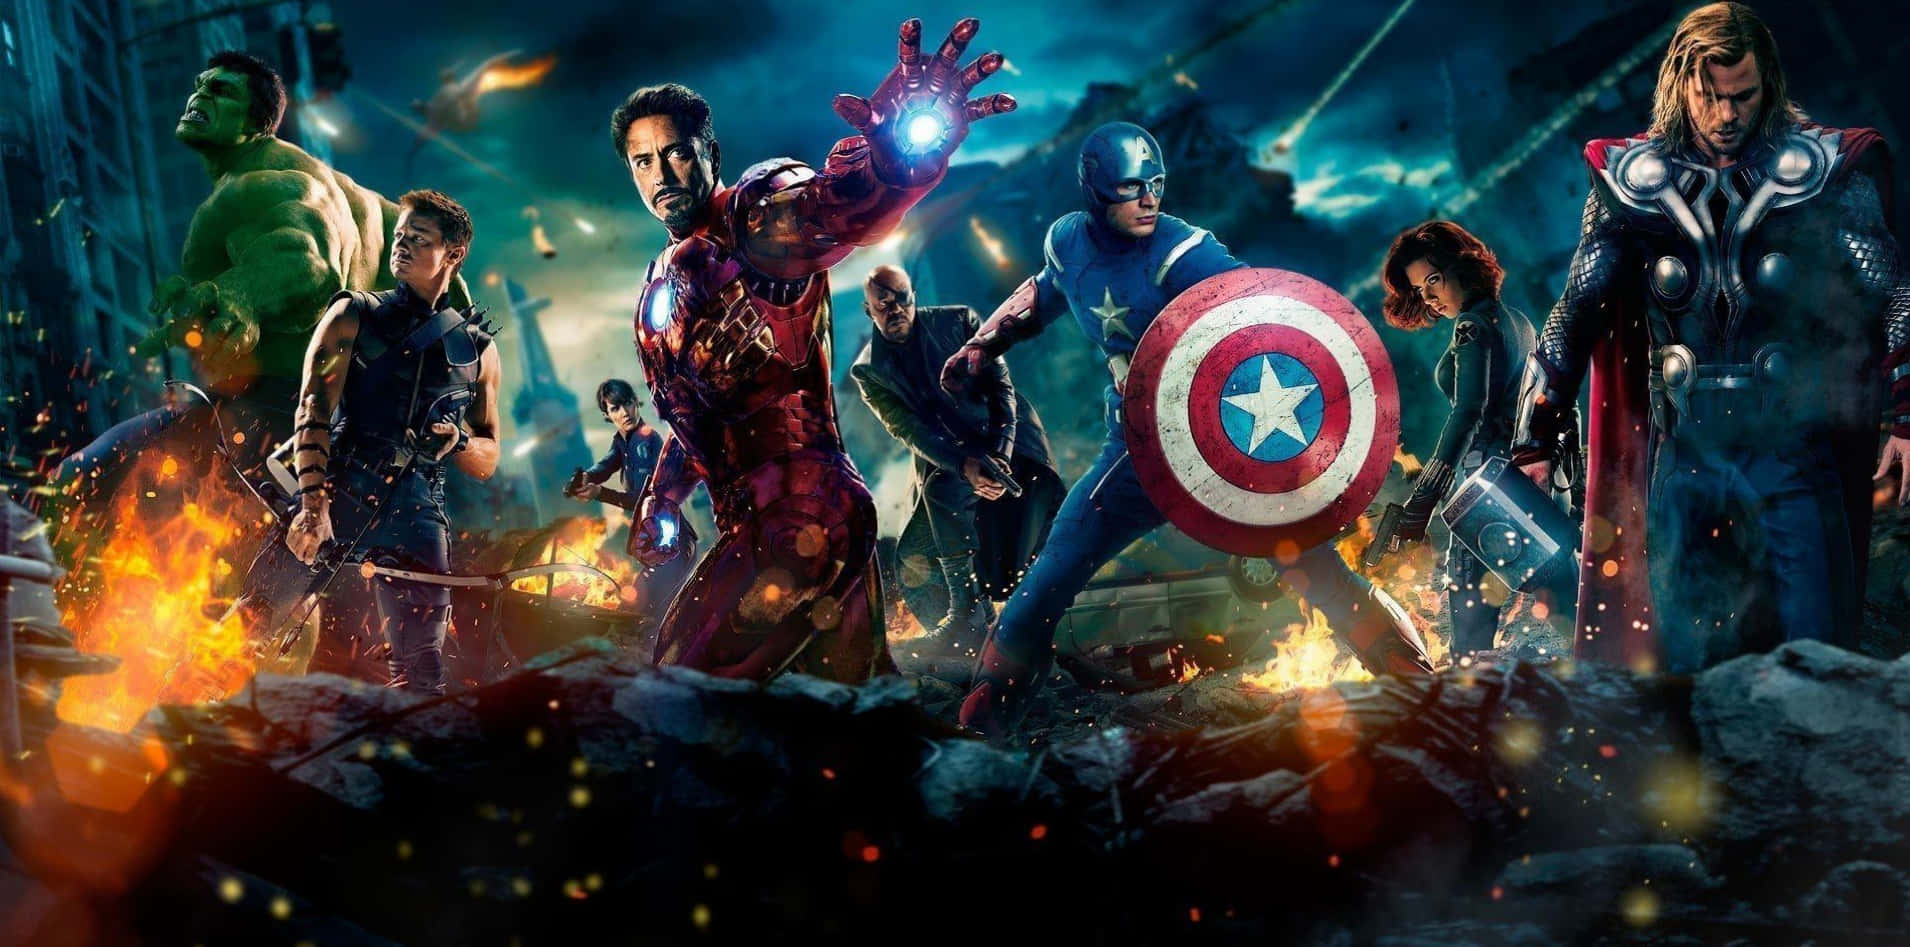 Action Marvel Avengers In New York Background